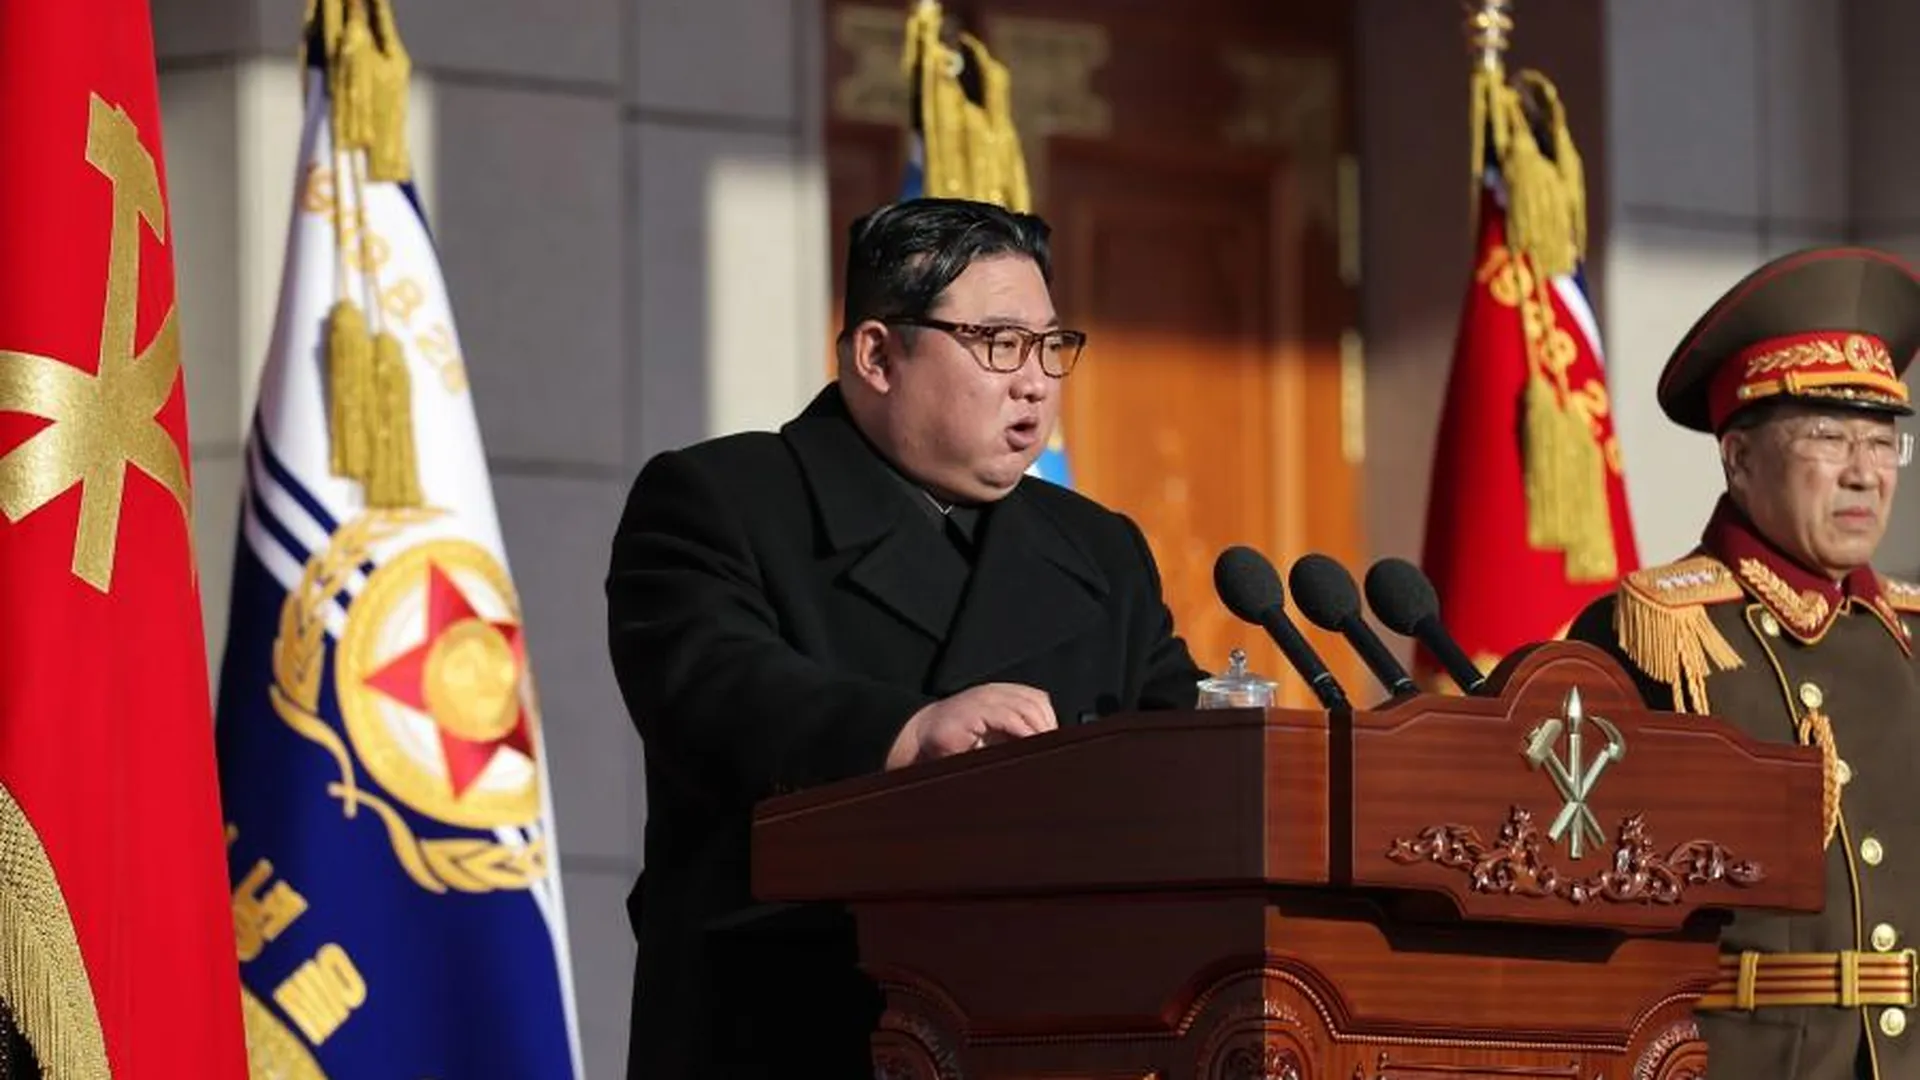 Какова вероятность войны между КНДР и Южной Кореей: заявления лидеров и соотношение сил